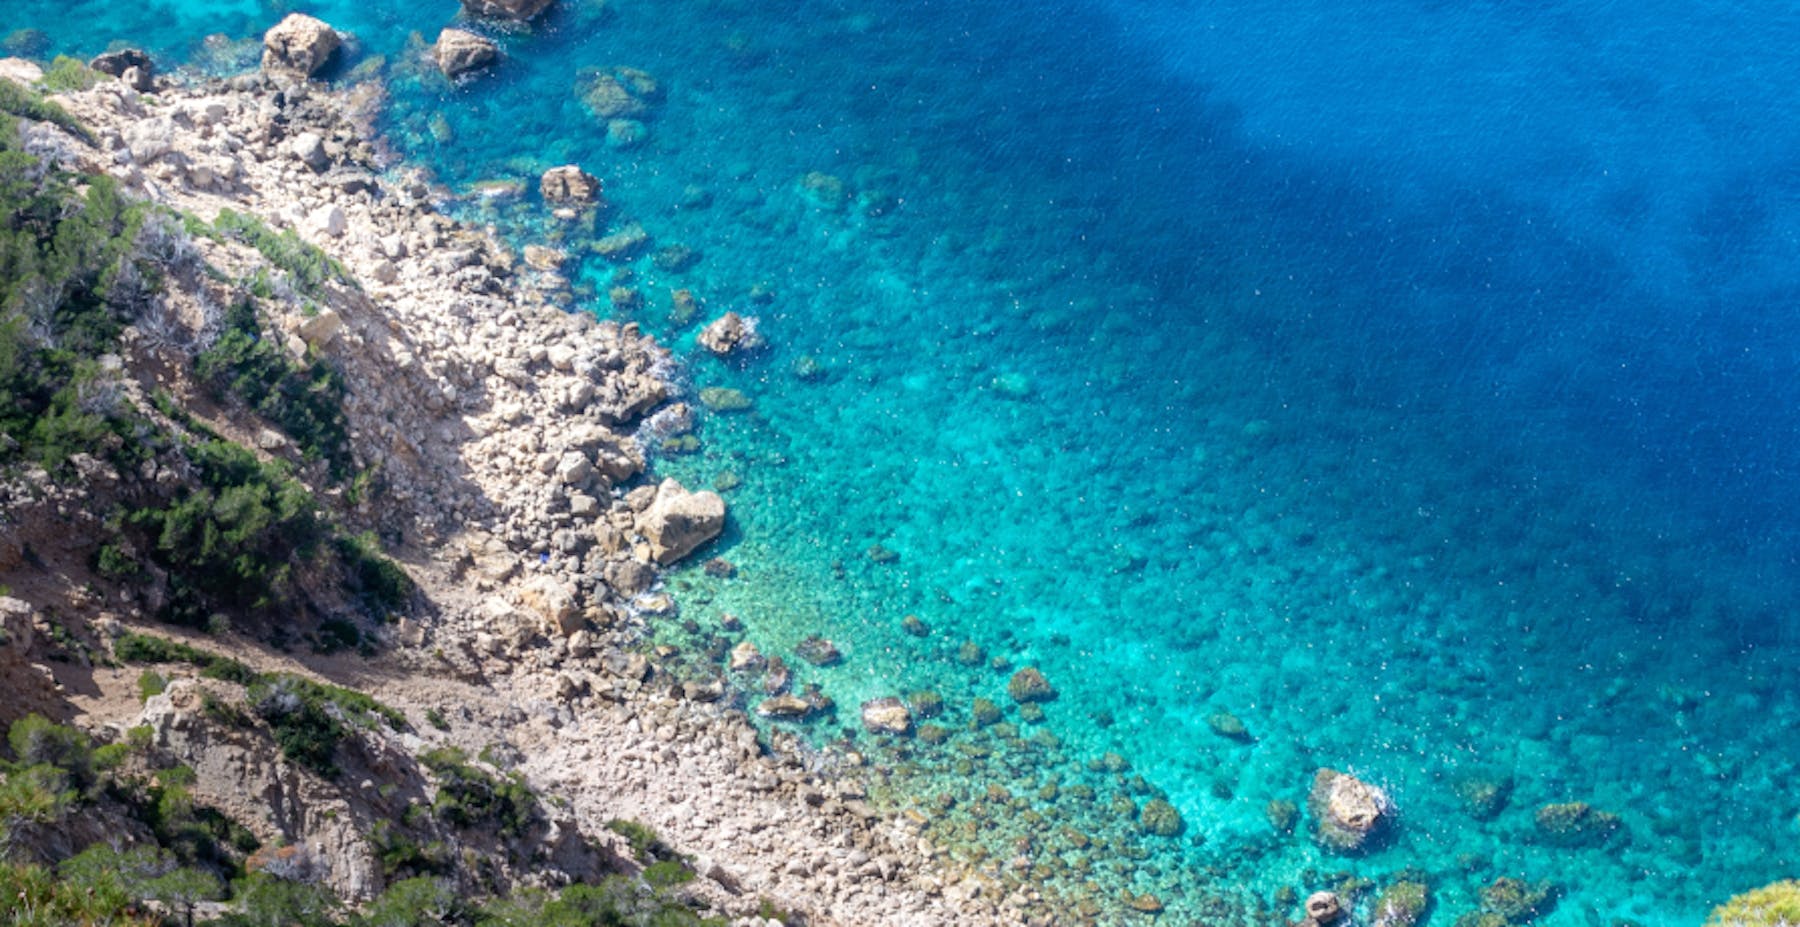 plage de galets devant une eau turquoise